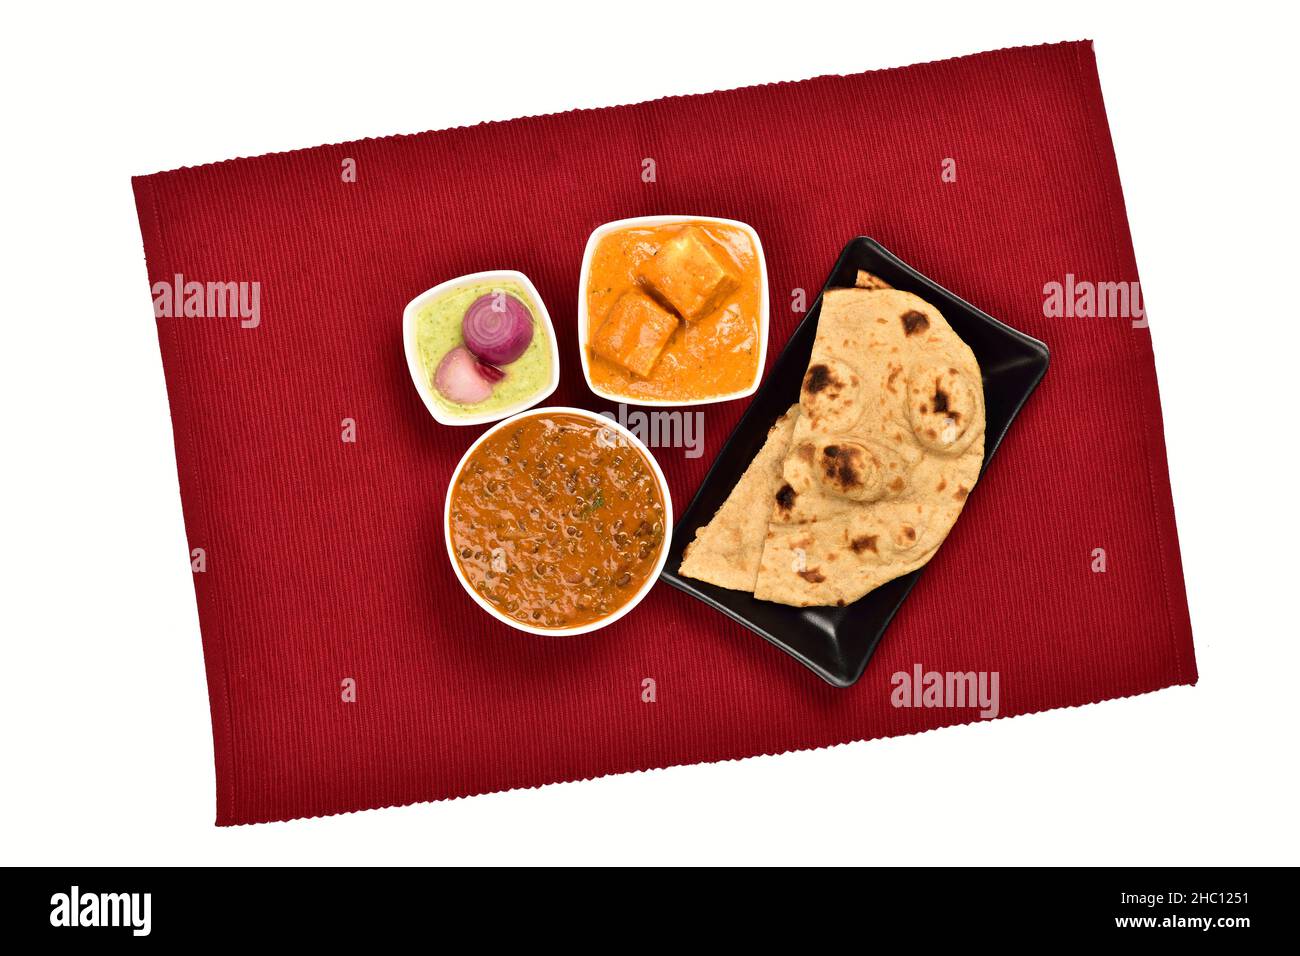 Vue de dessus de Shahi Paneer et Dal Makhani dans un bol servi avec l'oignon Chapati et Chutney Pickle sur un napperon isolé sur fond blanc Banque D'Images